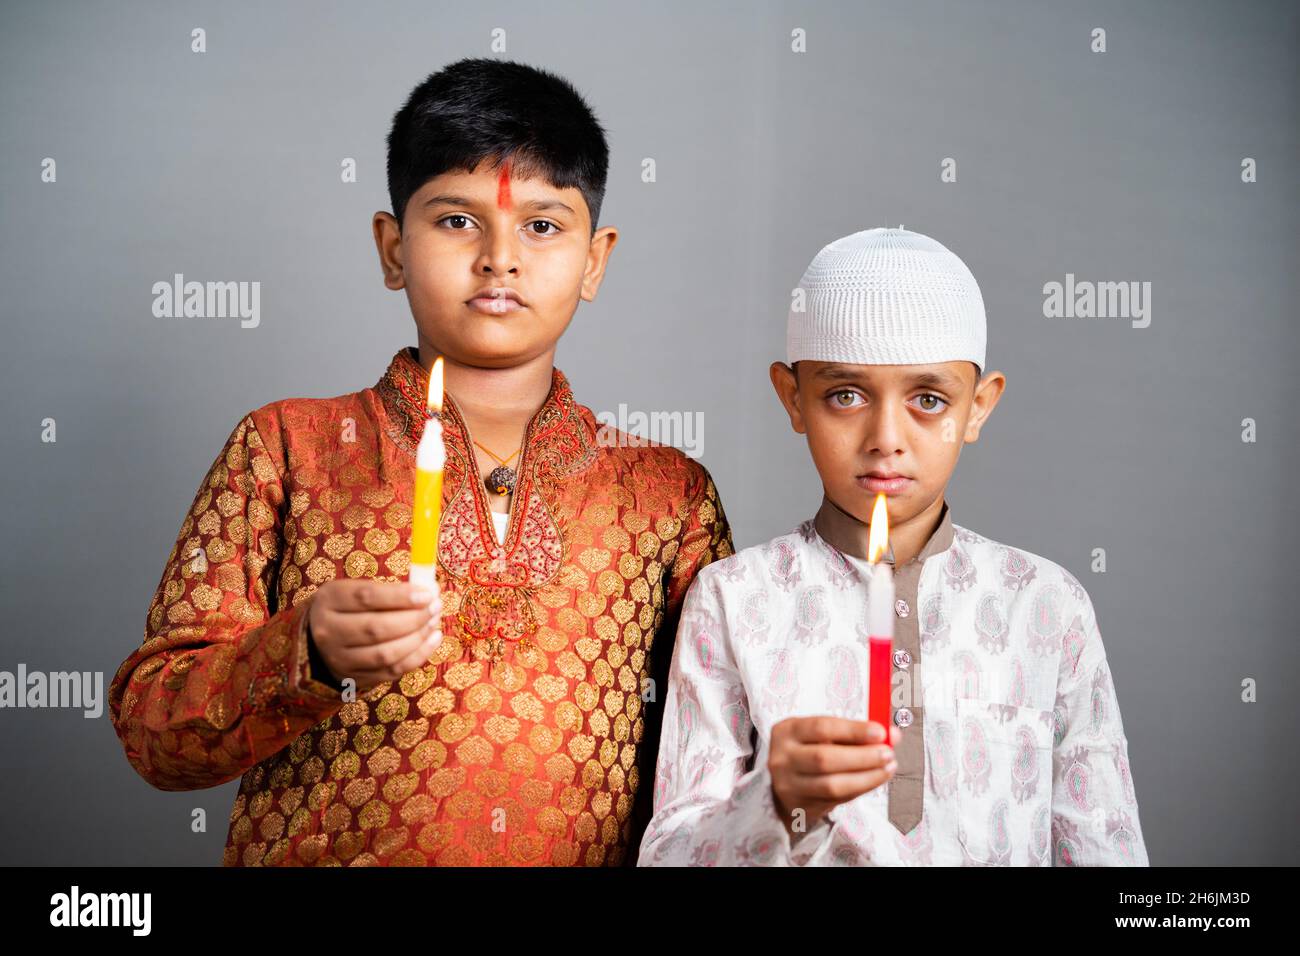 Hinduistisch-muslimische Kinder trauern oder beten, indem sie Kerzen halten, indem sie die Kamera betrachten - Konzept der Anerkennung und des Schutzes vor religiösem Kommunalismus. Stockfoto